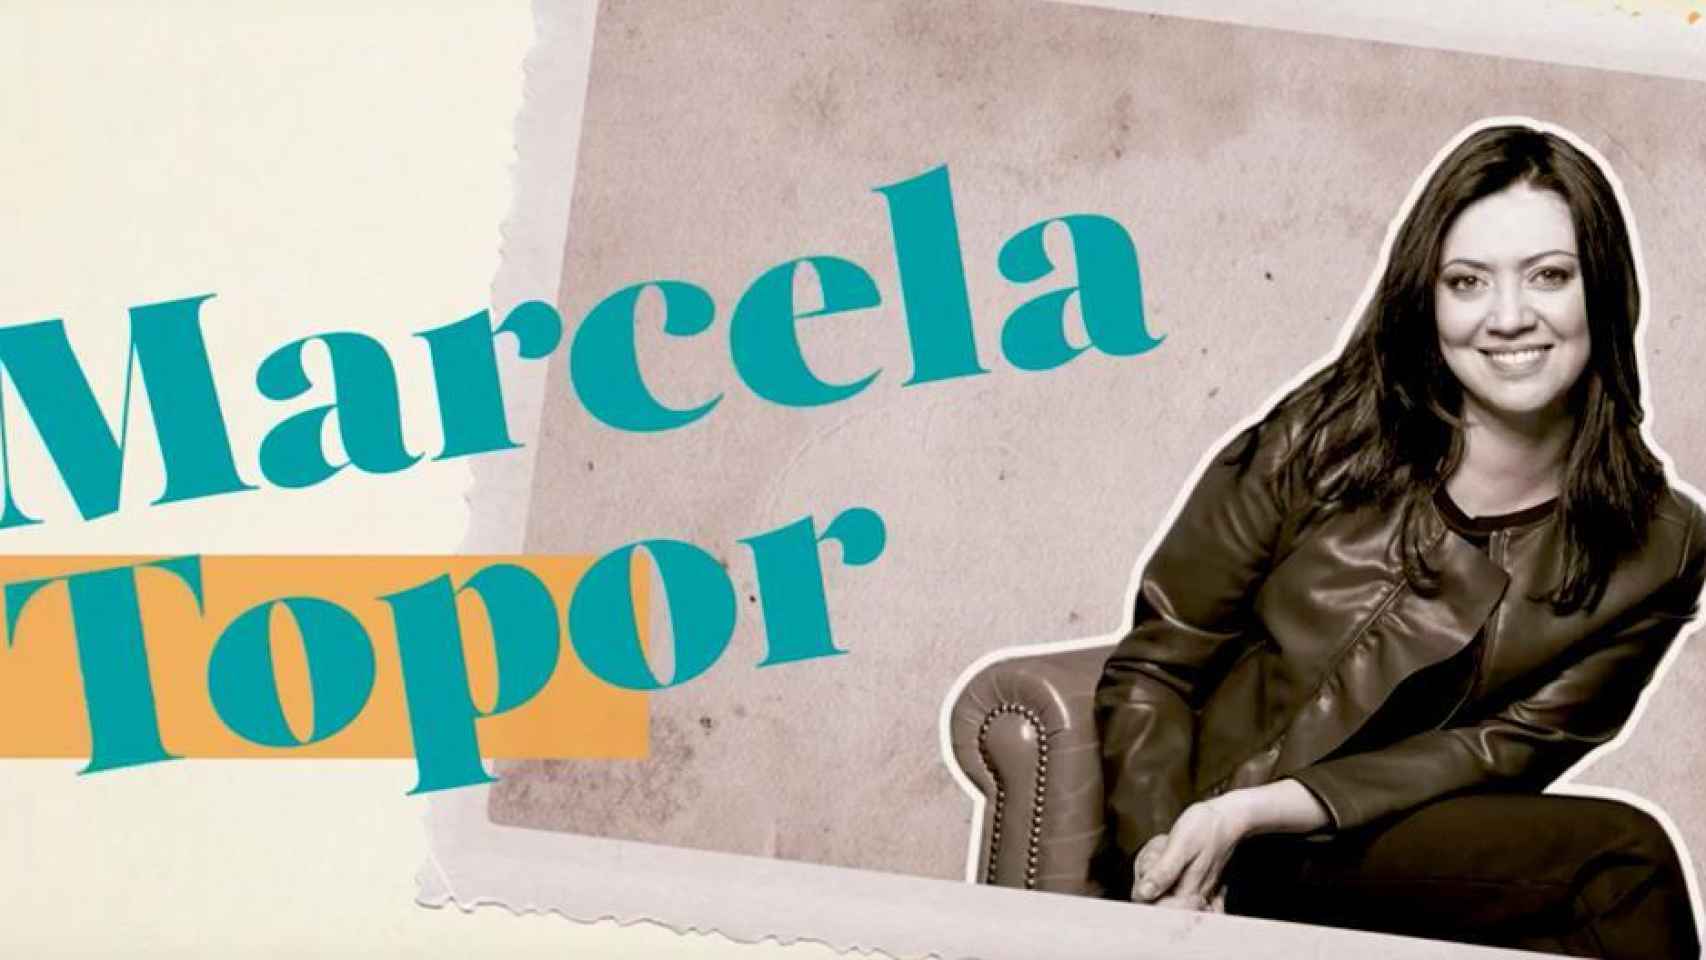 Marcela Topor, en la imagen promocional de su programa.